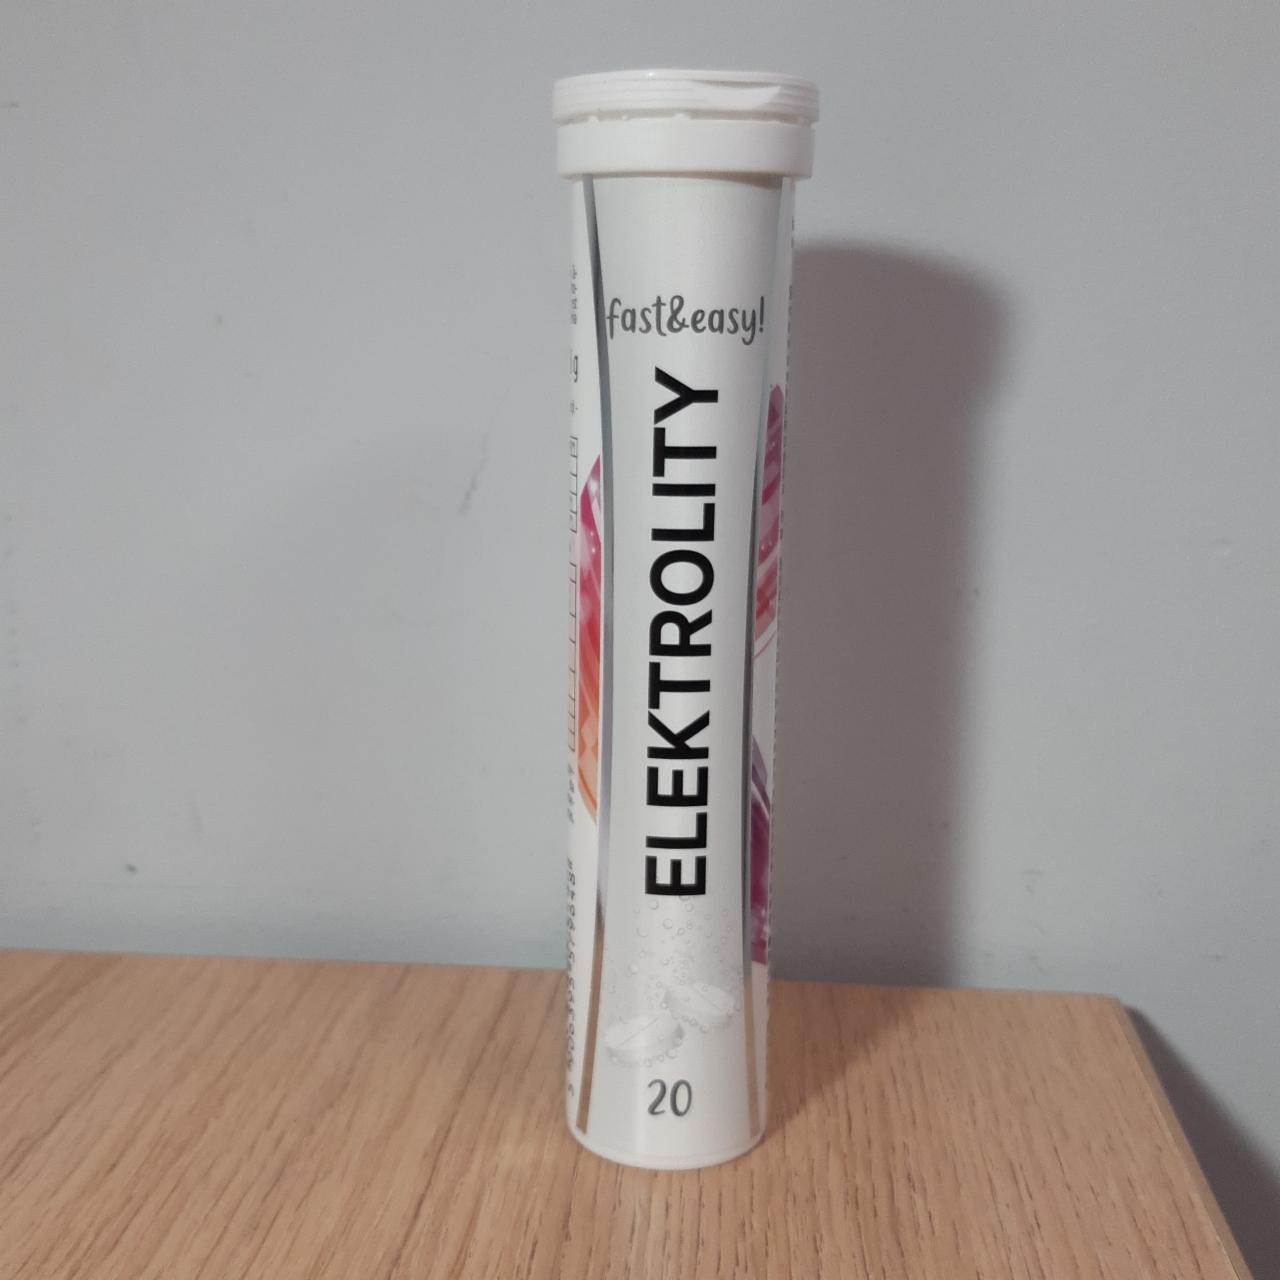 Zdjęcia - Elektrolity fast&easy